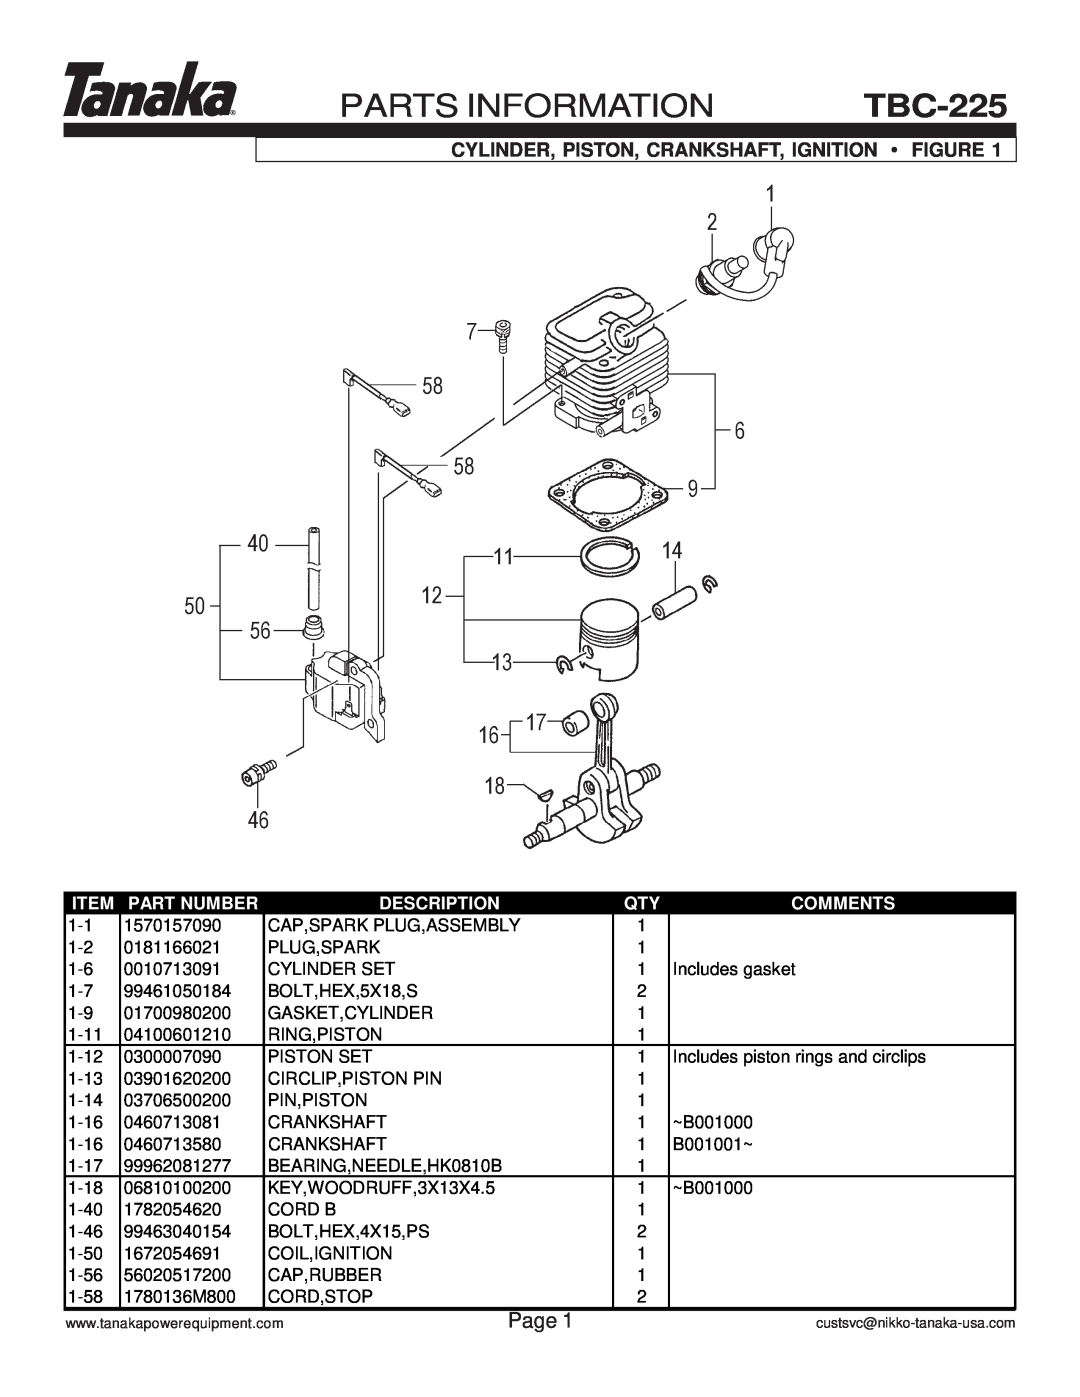 Tanaka TBC-225 Parts Information, Page, Cylinder, Piston, Crankshaft, Ignition Figure, Part Number, Description, Comments 